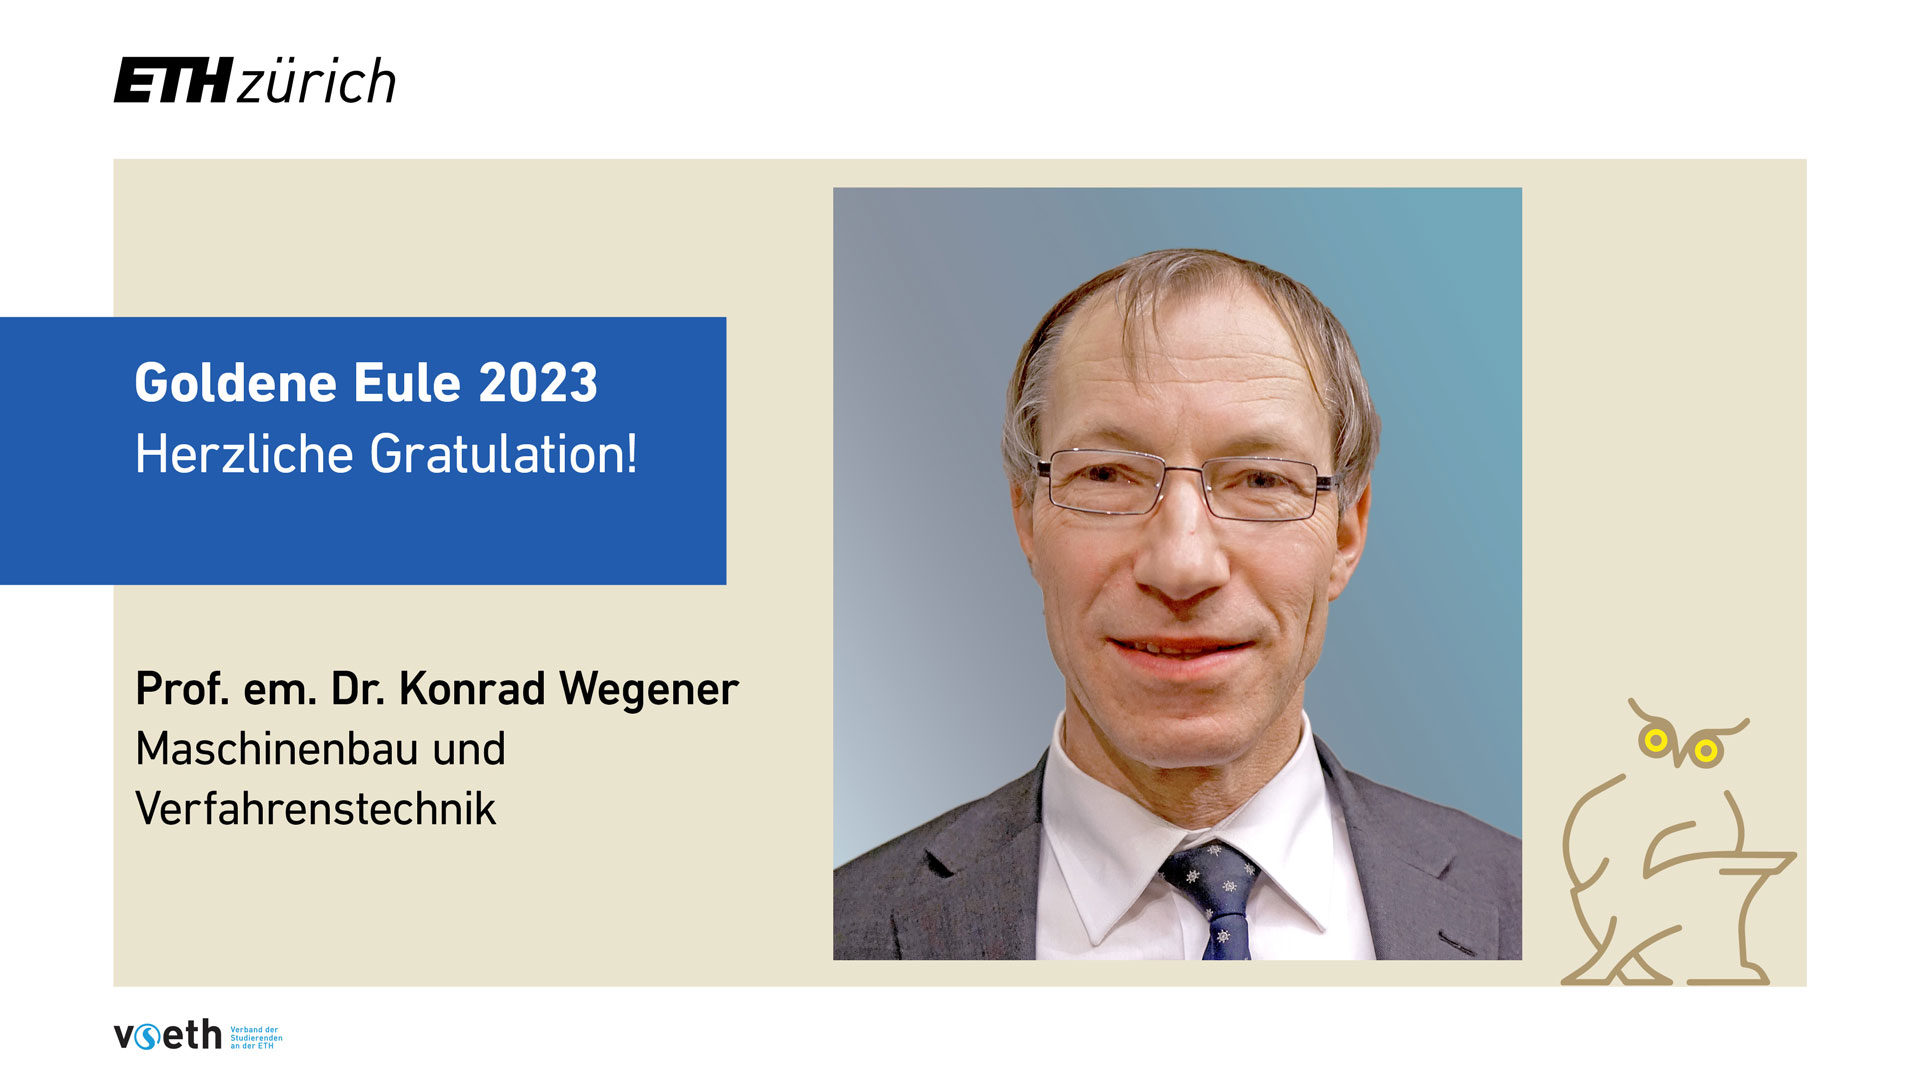 Foto von Konrad Wegener mit dem Text "Goldene Eule 2023, Herzliche Gratulation, Prof. em. Konrad Wegener, Maschinenbau und Verfahrenstechnik